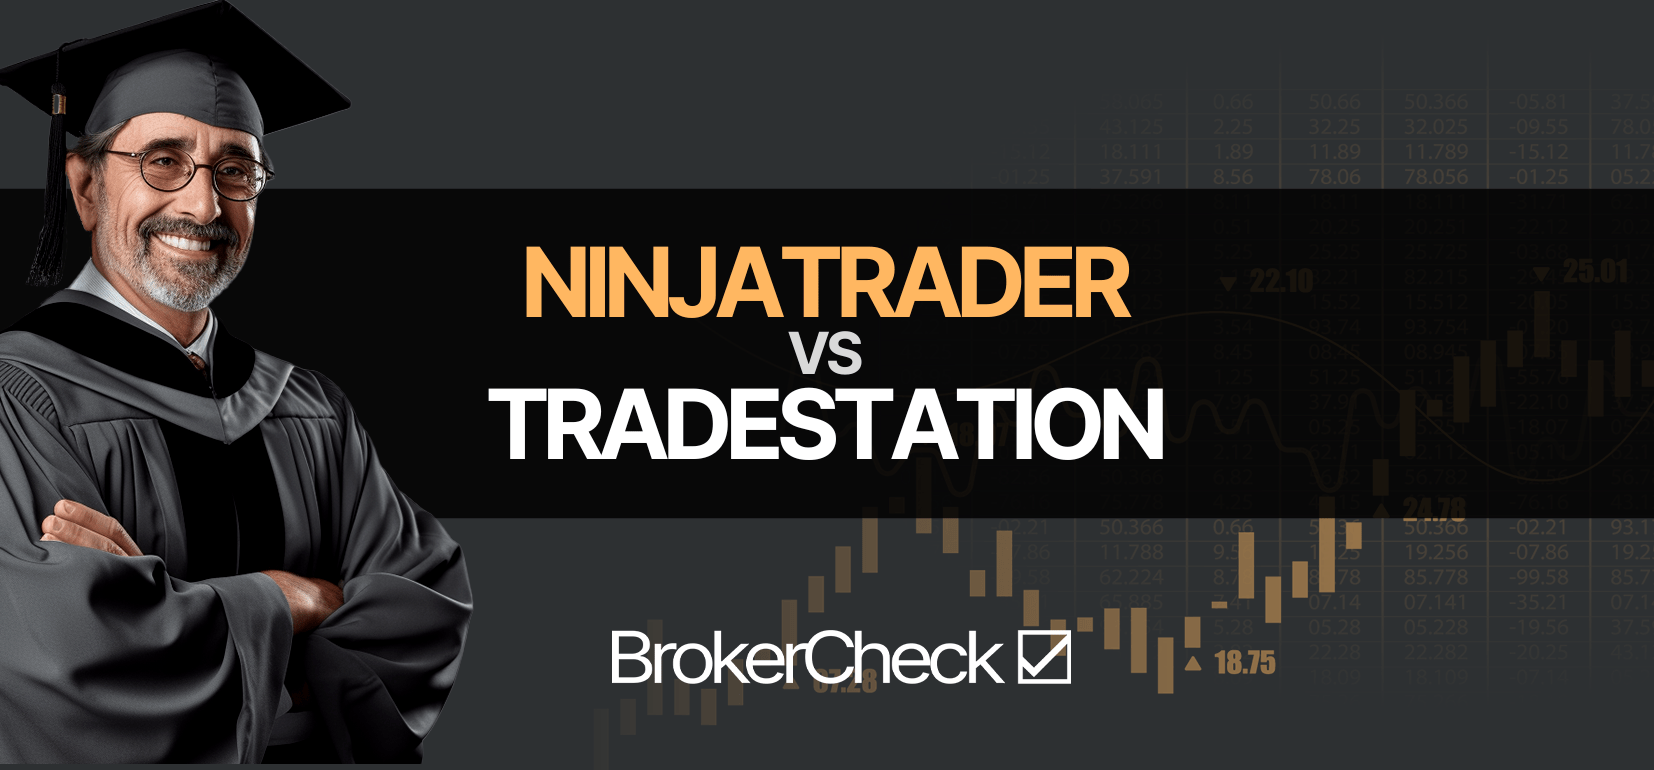 NinjaTrader contro Tradestazione